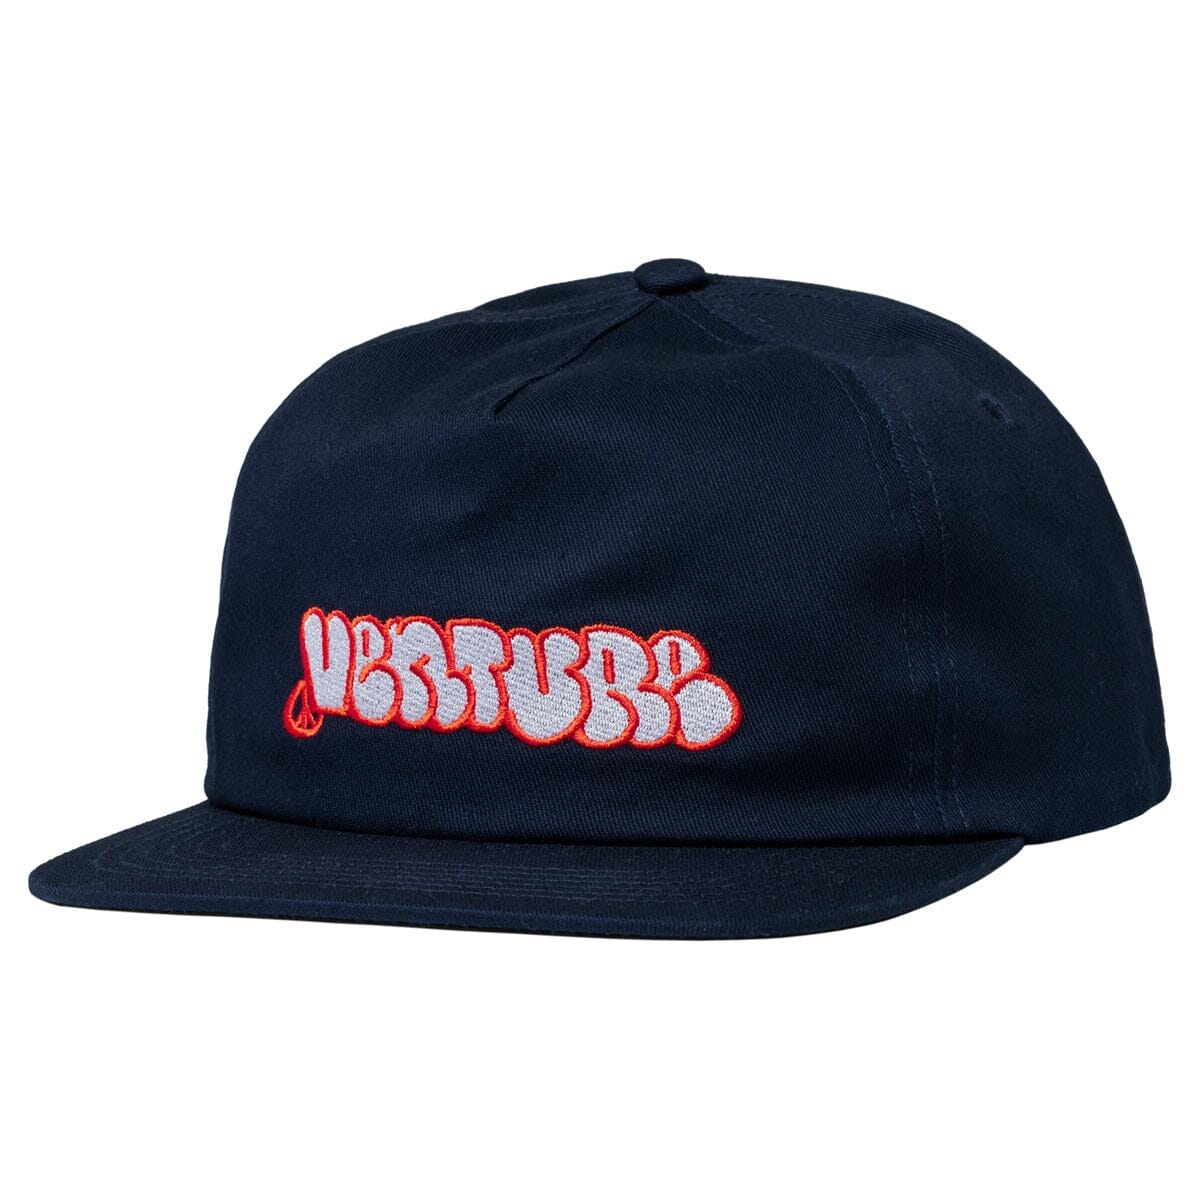 Venture Throw Snapback Hat Navy/Red hats Venture 